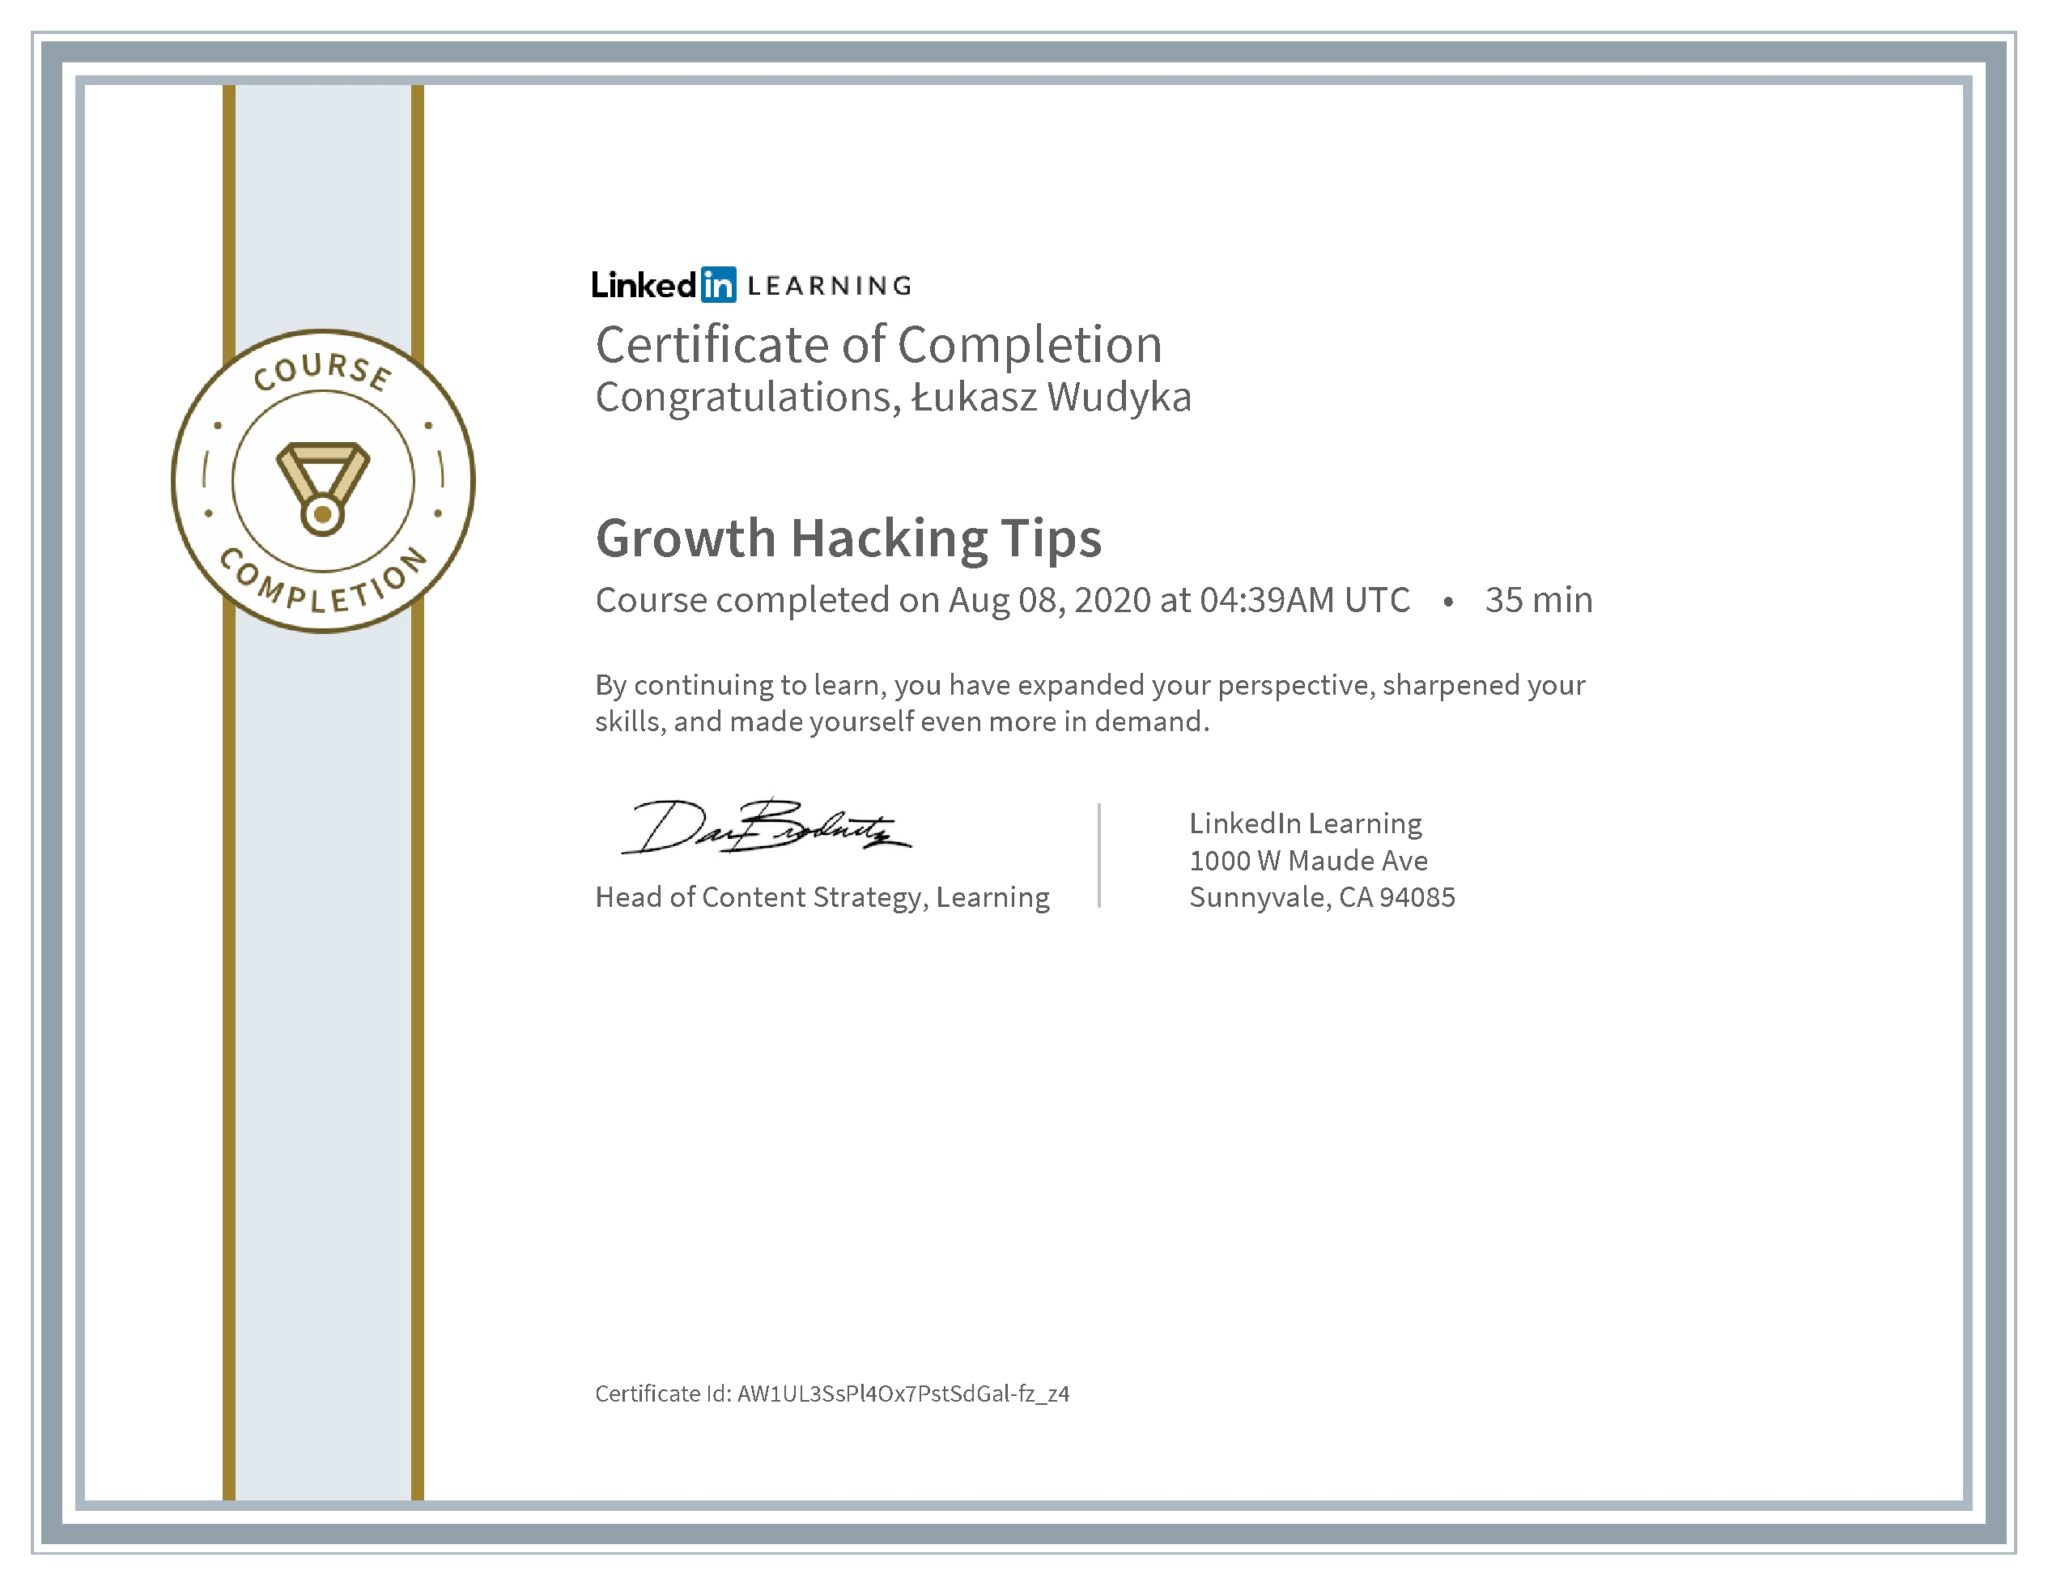 Łukasz Wudyka certyfikat LinkedIn Growth Hacking Tips